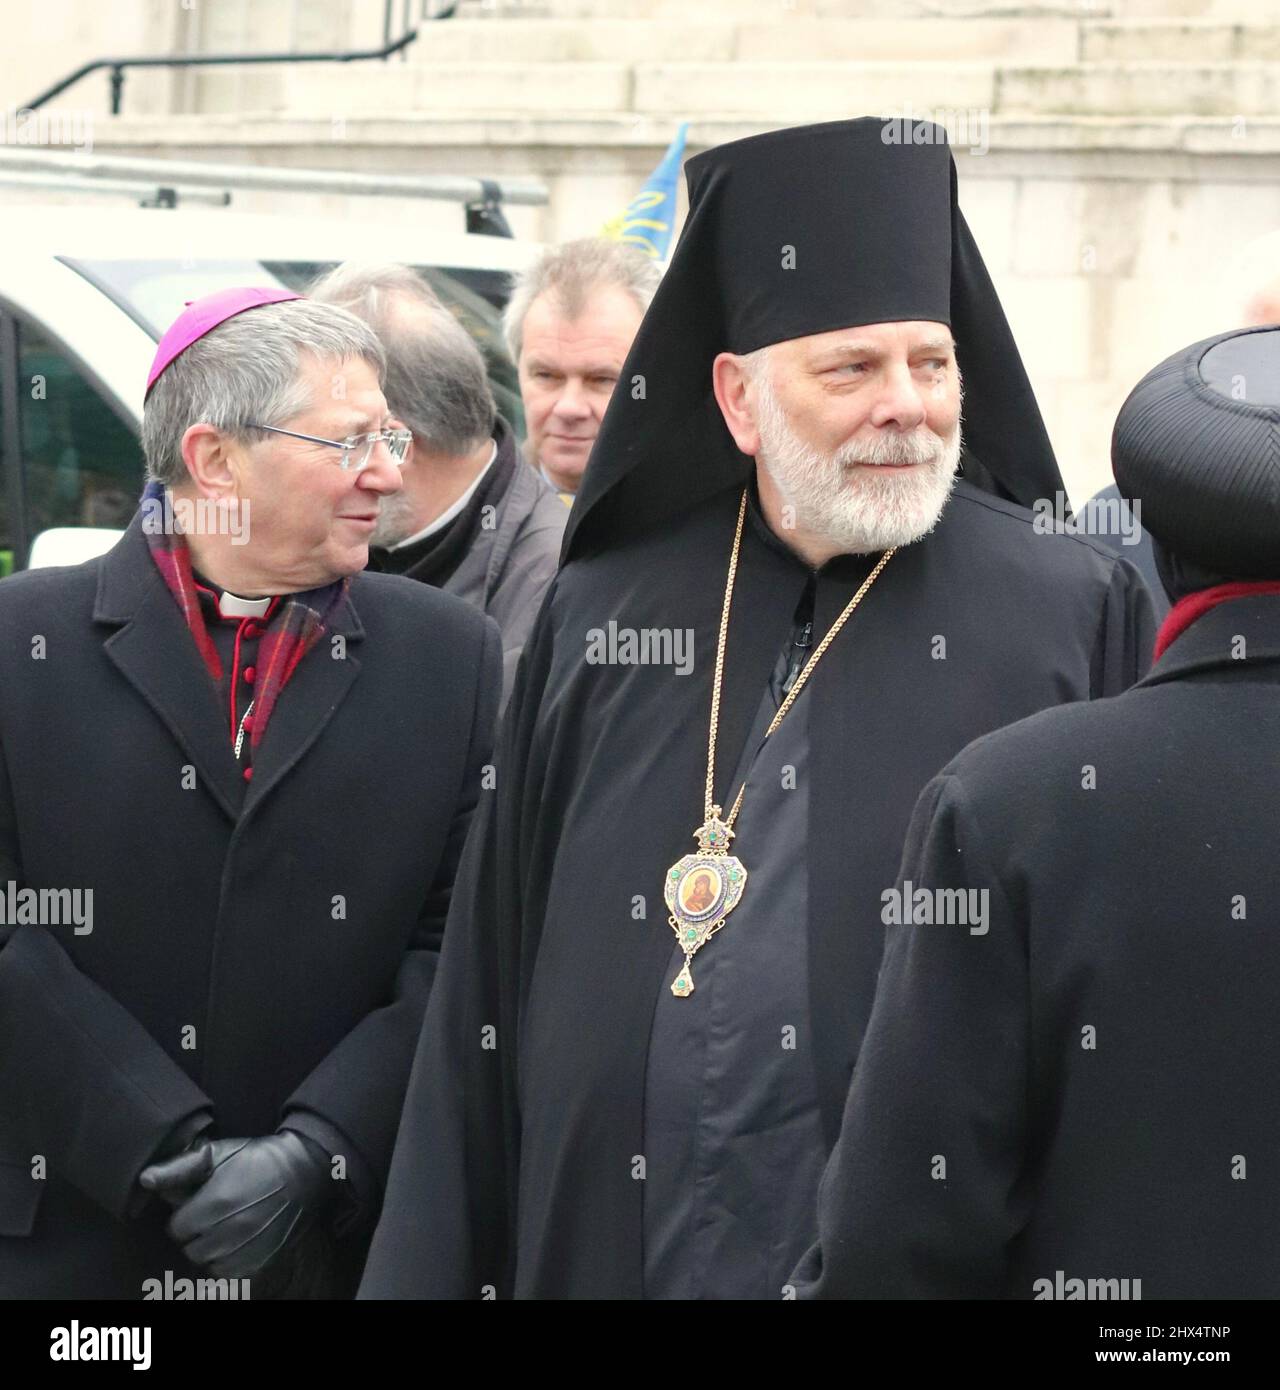 05/03/22 i leader religiosi si sono riuniti per pregare per la pace in Ucraina, Trafalgar Sq, Londra, Regno Unito Foto Stock